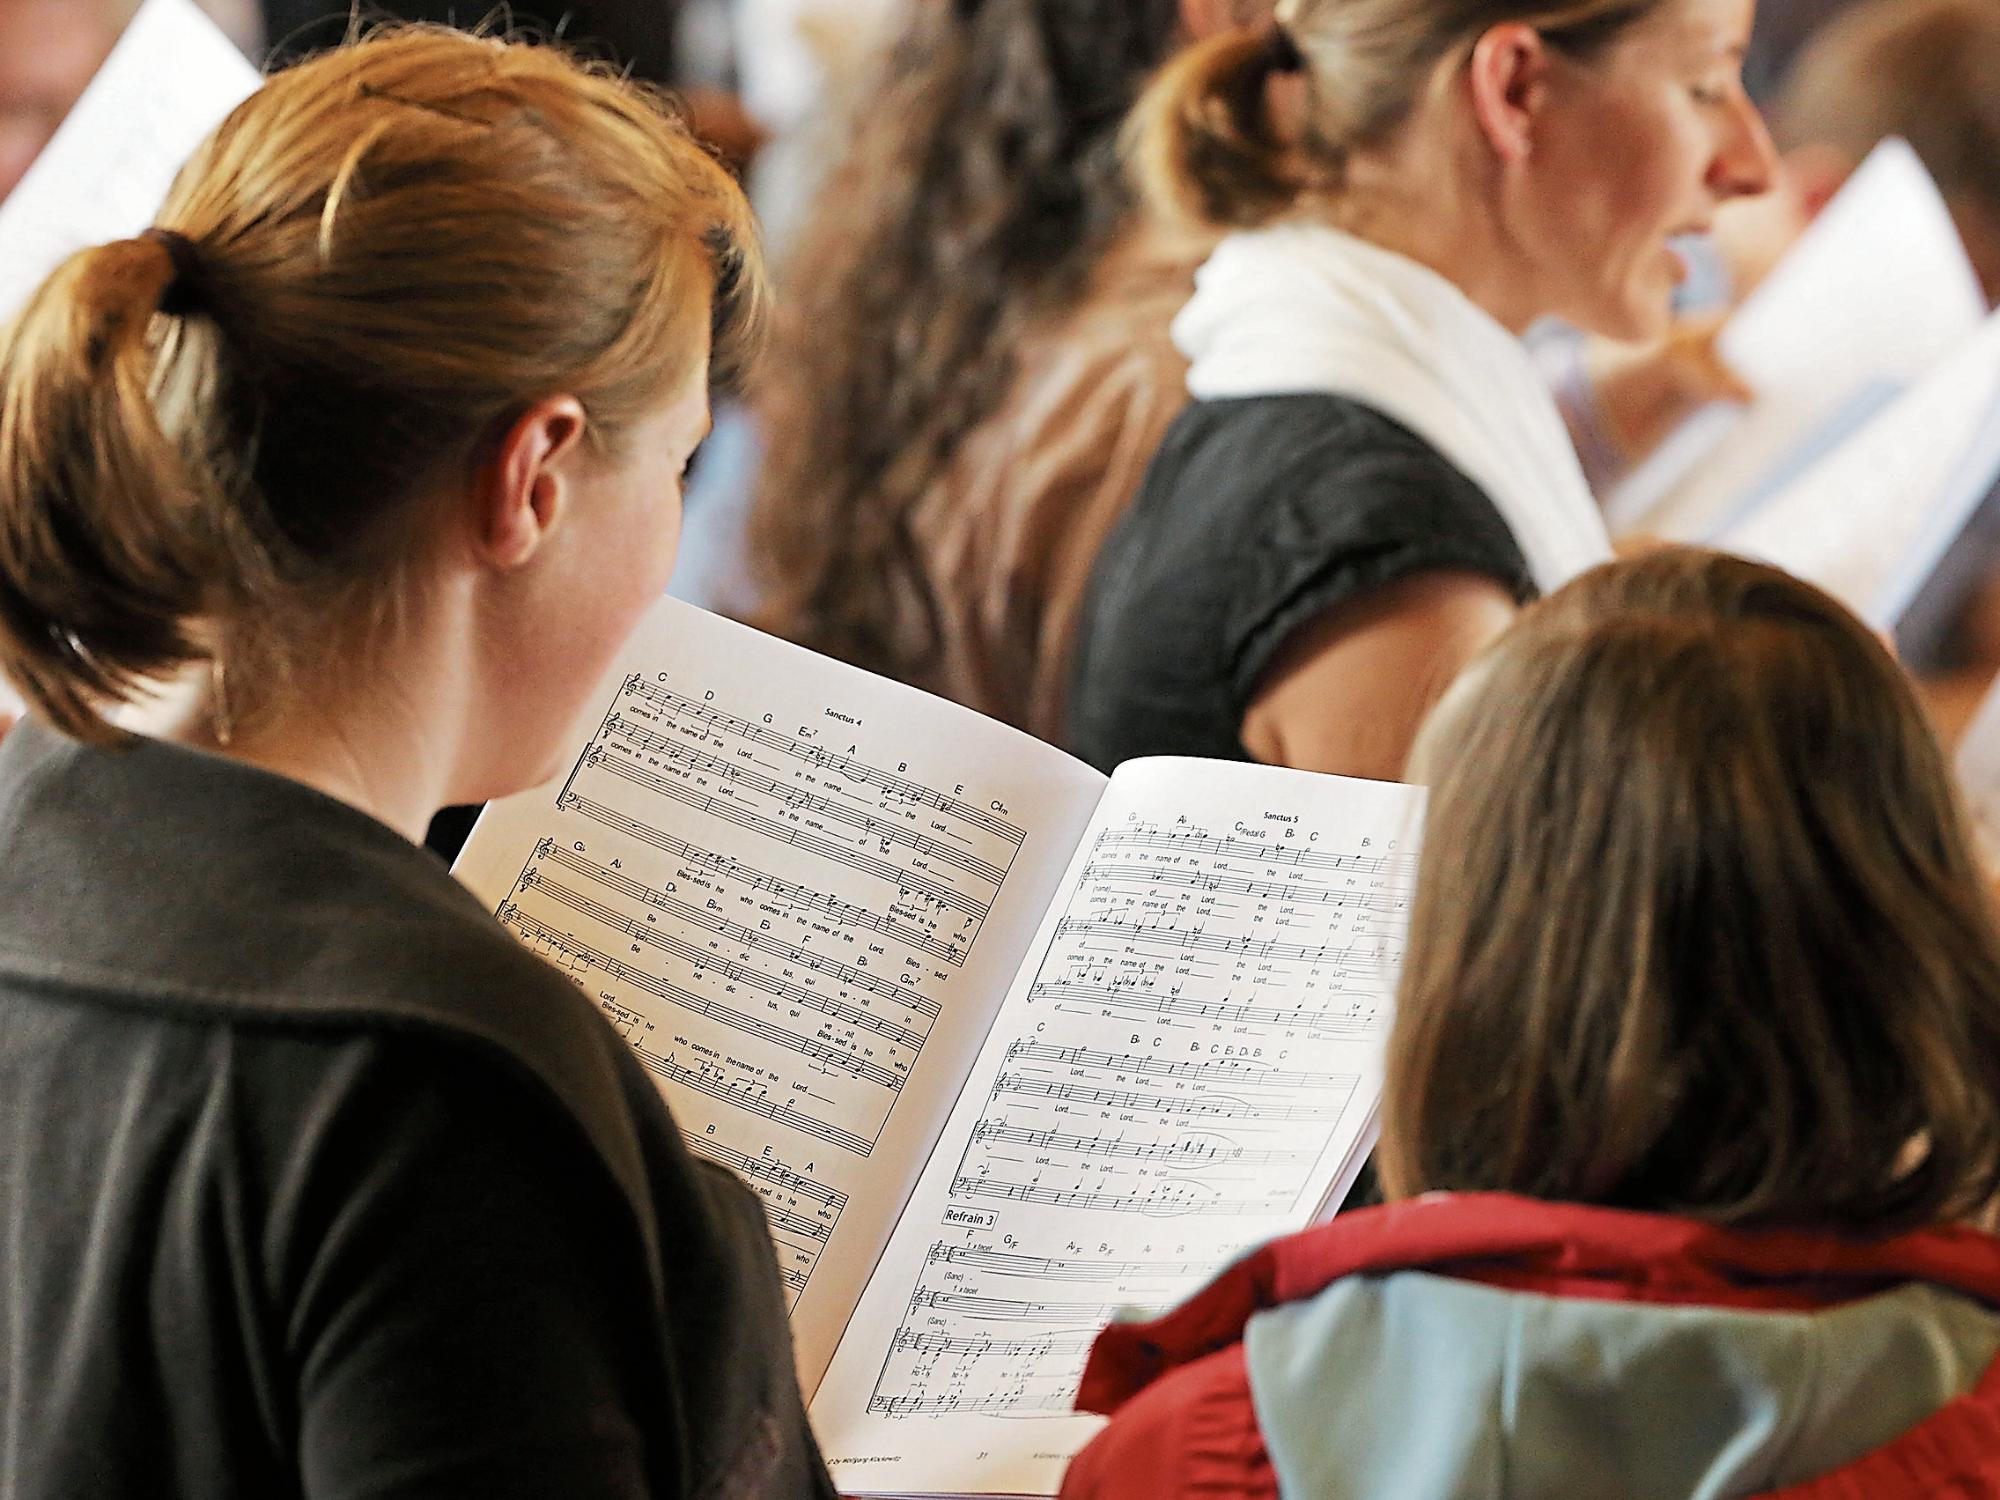 Wer im Chor singt, schätzt die Gemeinschaft und die Freude am Musizieren